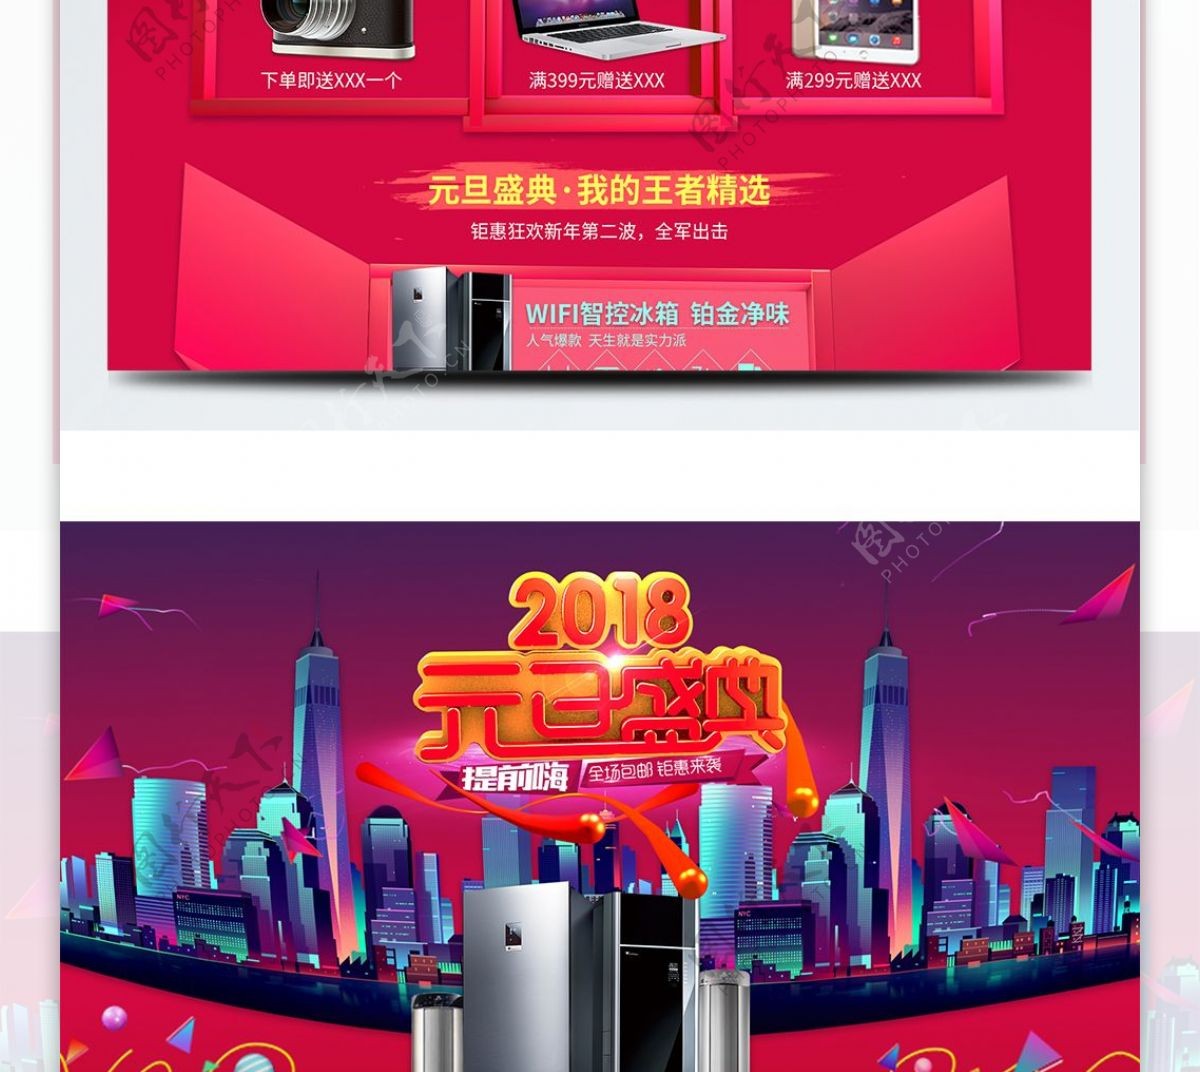 2018元旦盛典新年钜惠红色电器首页模板